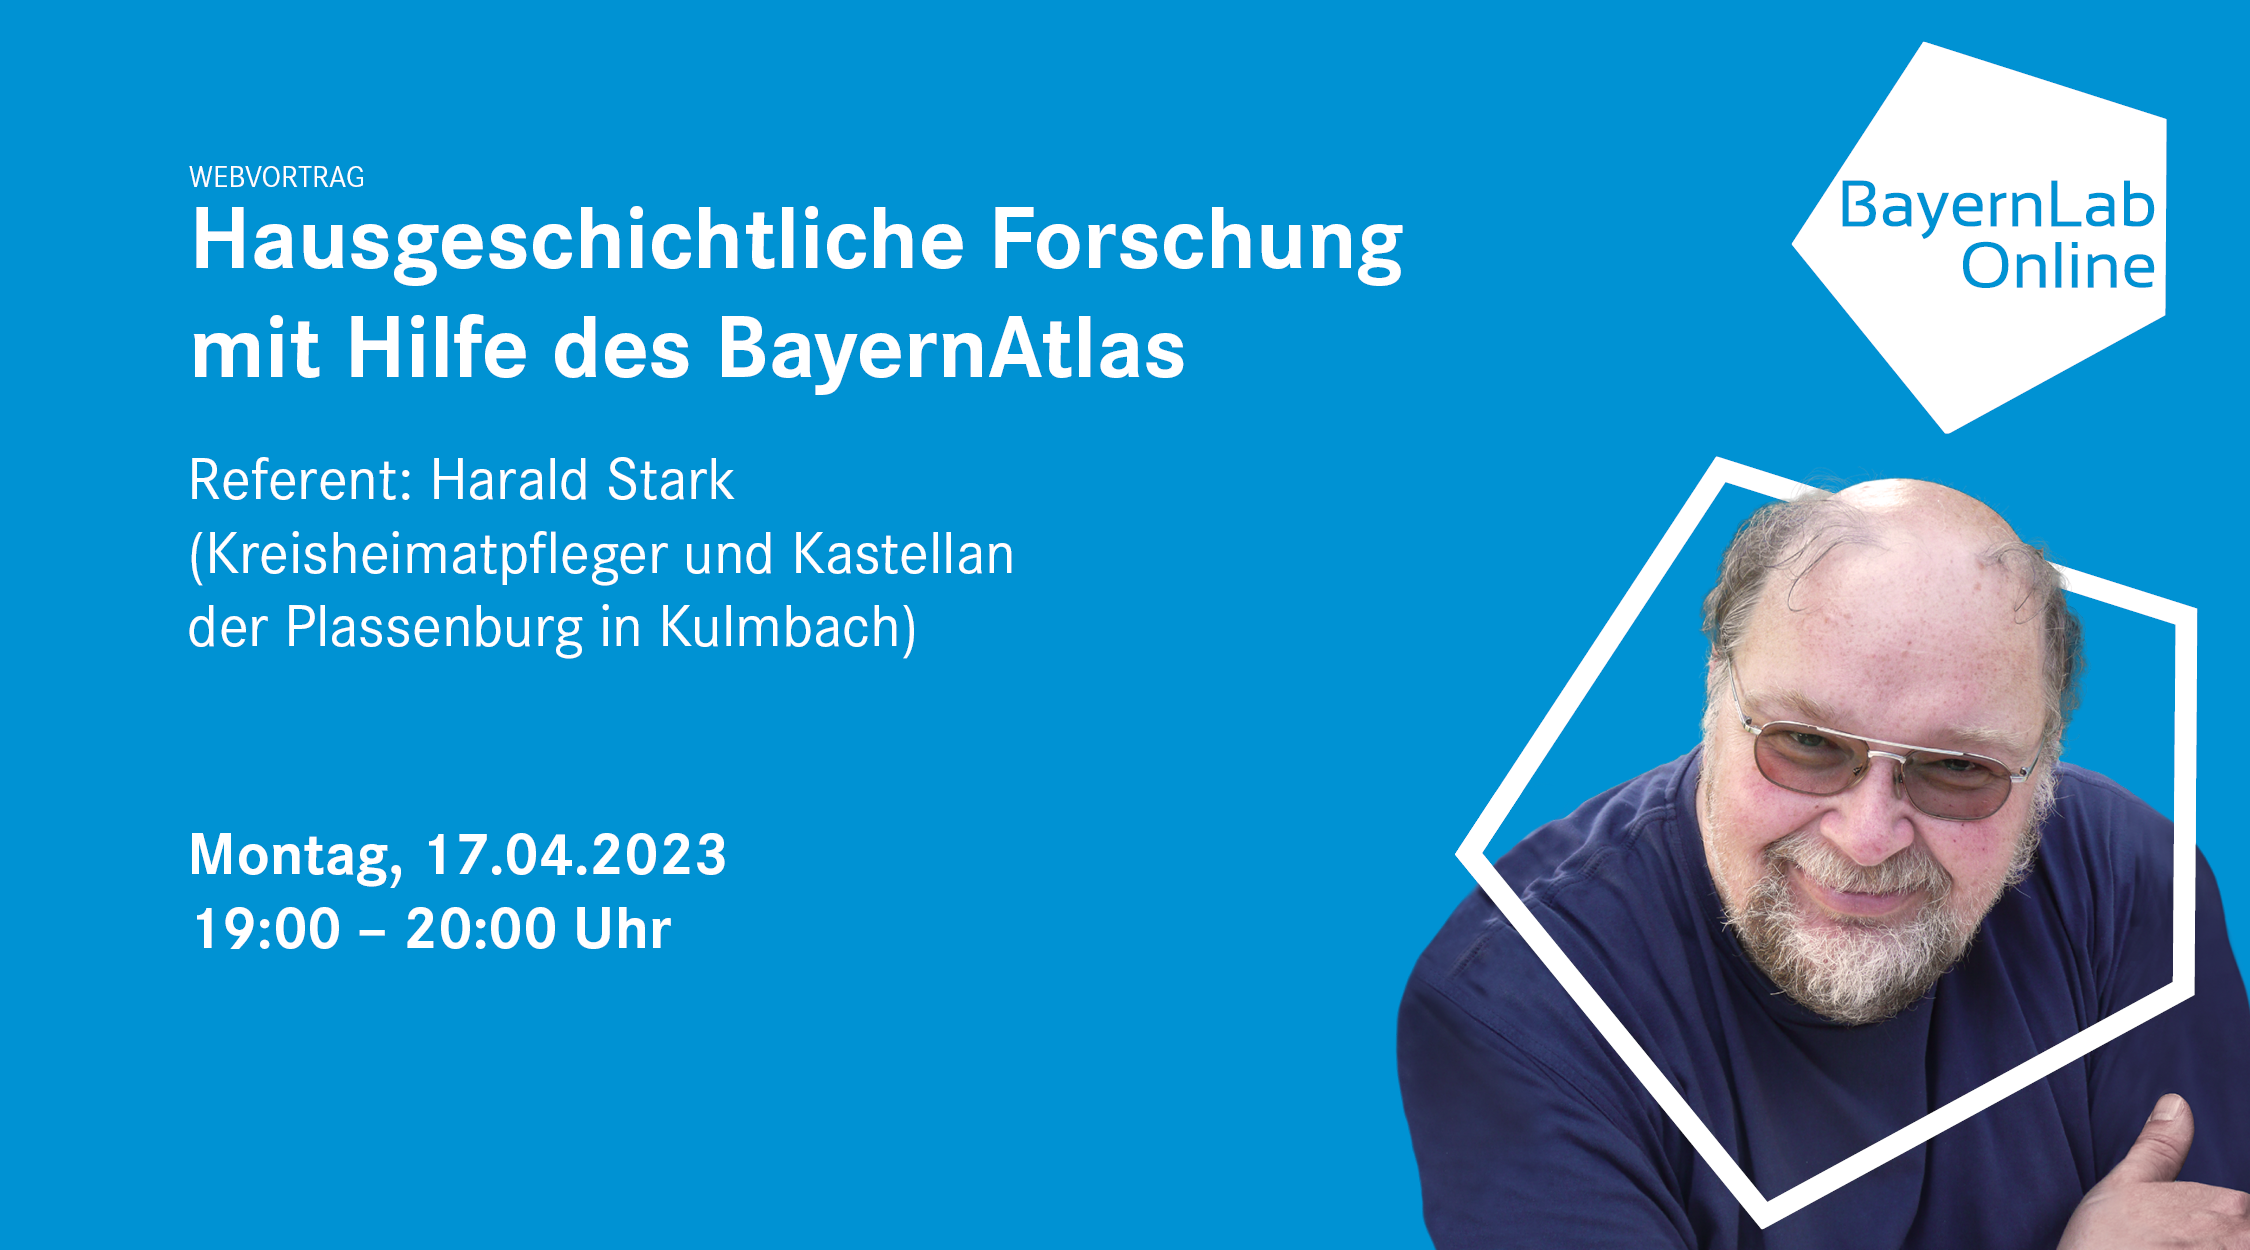 BayernLab Online Vortrag zum Thema Hausgeschichtliche Forschung mit Hilfe des Bayernatlas mit dem Referenten Herr Harald Stark am 17.04.2023 um 19:00 bis 20:00 Uhr